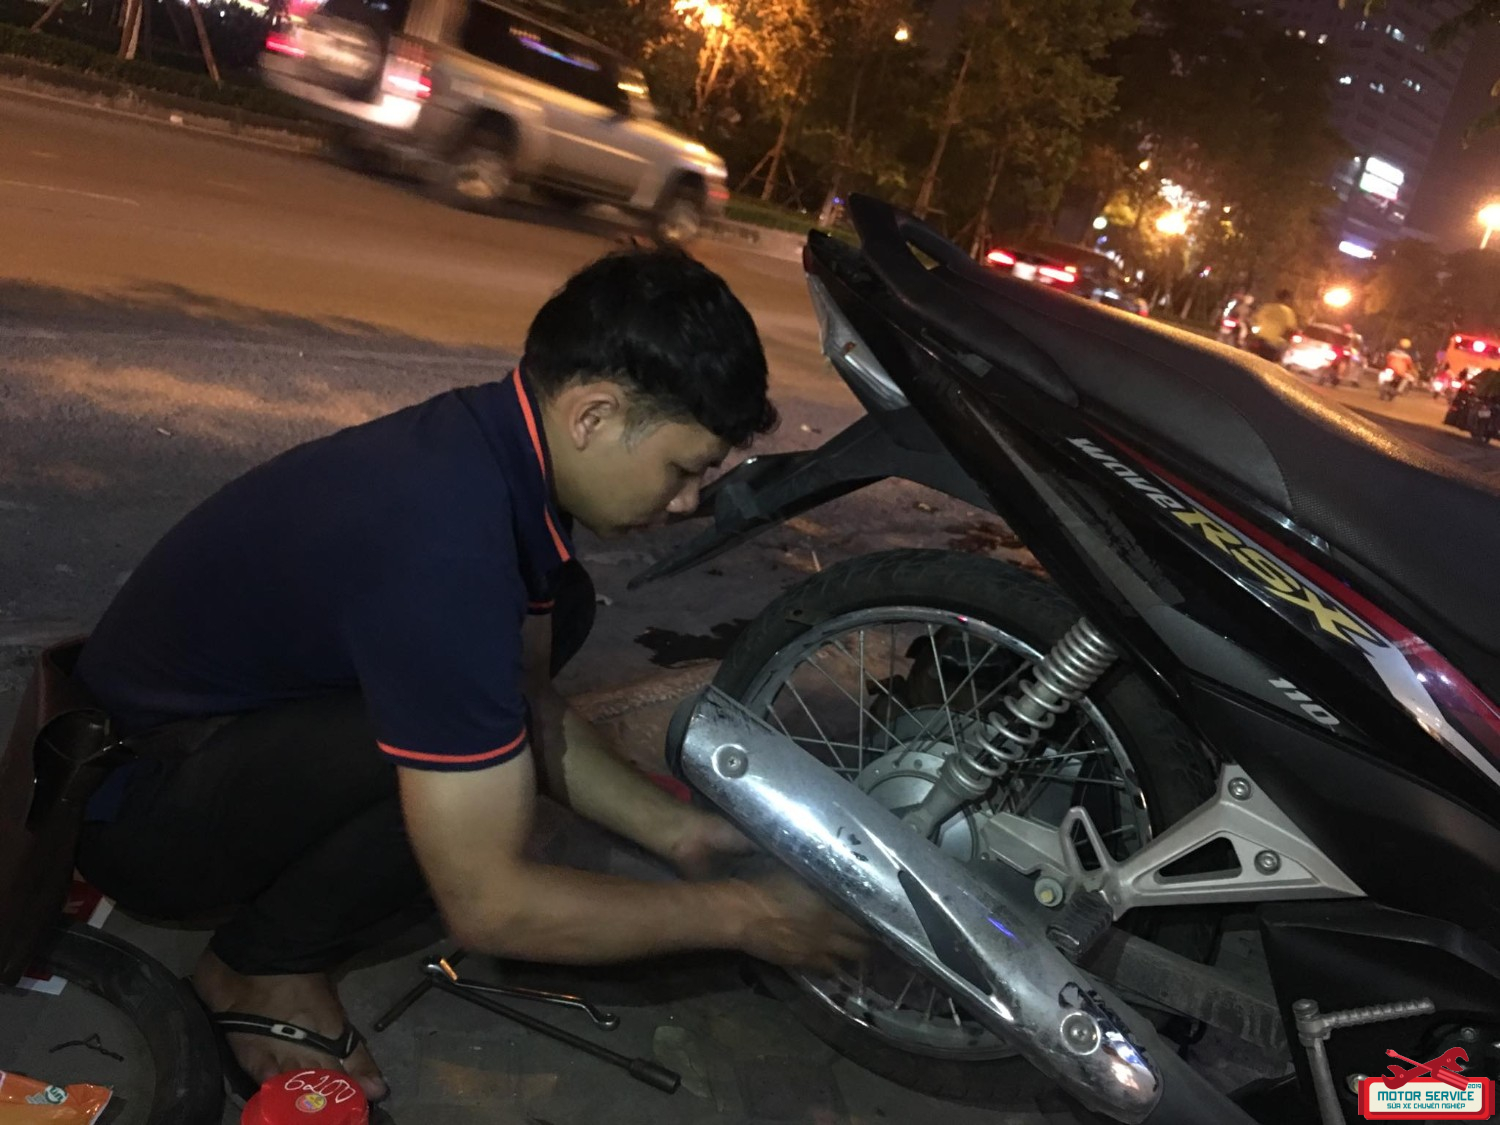 Thợ sửa xe Hà Nội nổi tiếng với sự chuyên nghiệp, tận tâm với khách hàng và giải quyết vấn đề cho xe của bạn. Đến với các tiệm sửa xe ở Hà Nội, bạn sẽ được đảm bảo sự an toàn, giá cả phải chăng và chất lượng tốt nhất cho chiếc xe của bạn.